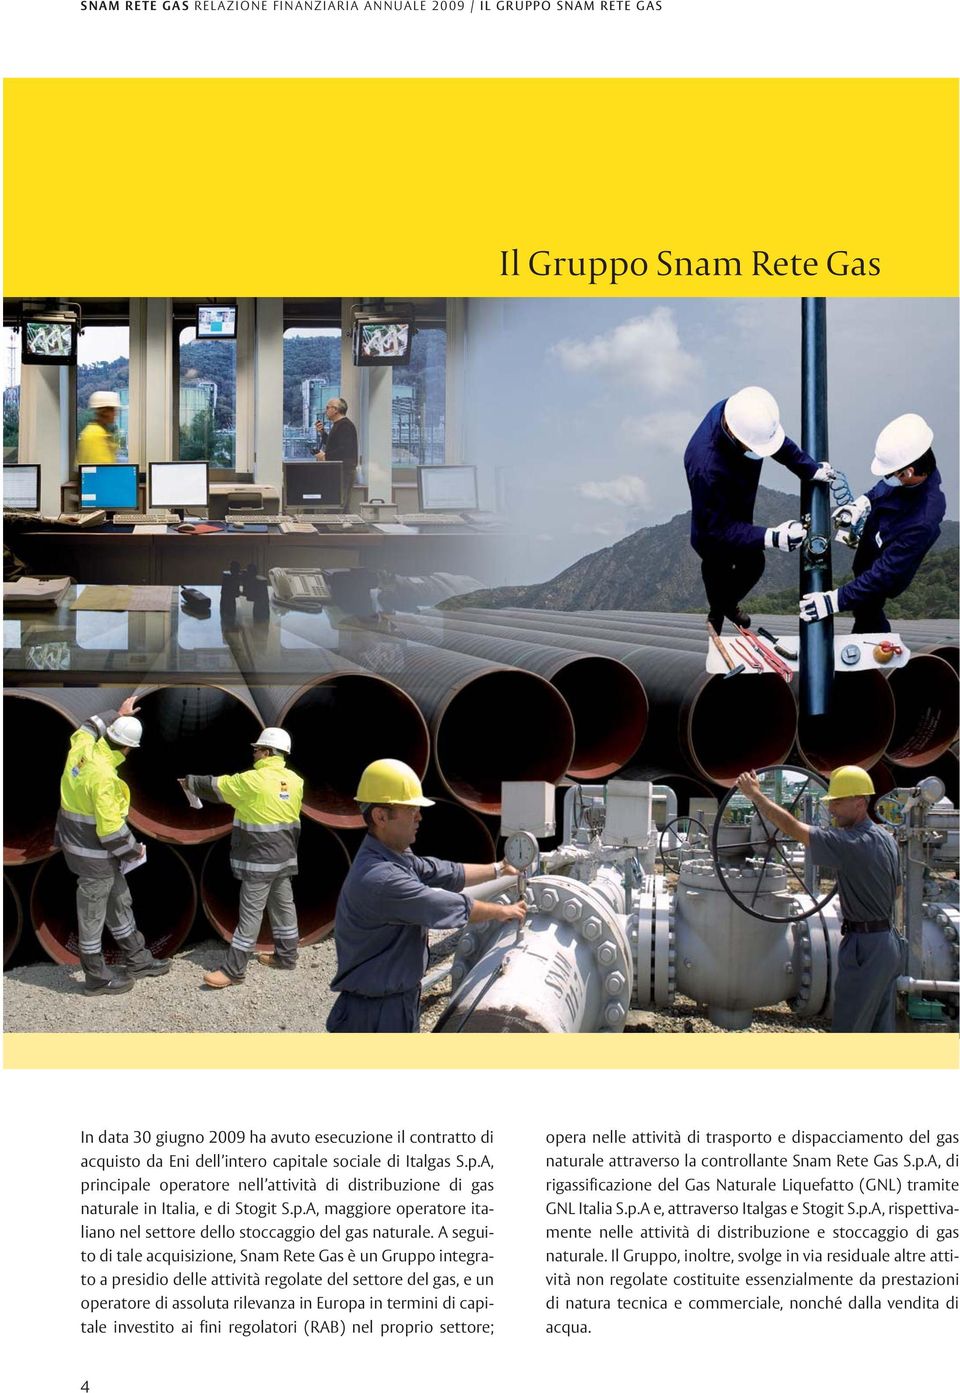 A seguito di tale acquisizione, Snam Rete Gas è un Gruppo integrato a presidio delle attività regolate del settore del gas, e un operatore di assoluta rilevanza in Europa in termini di capitale